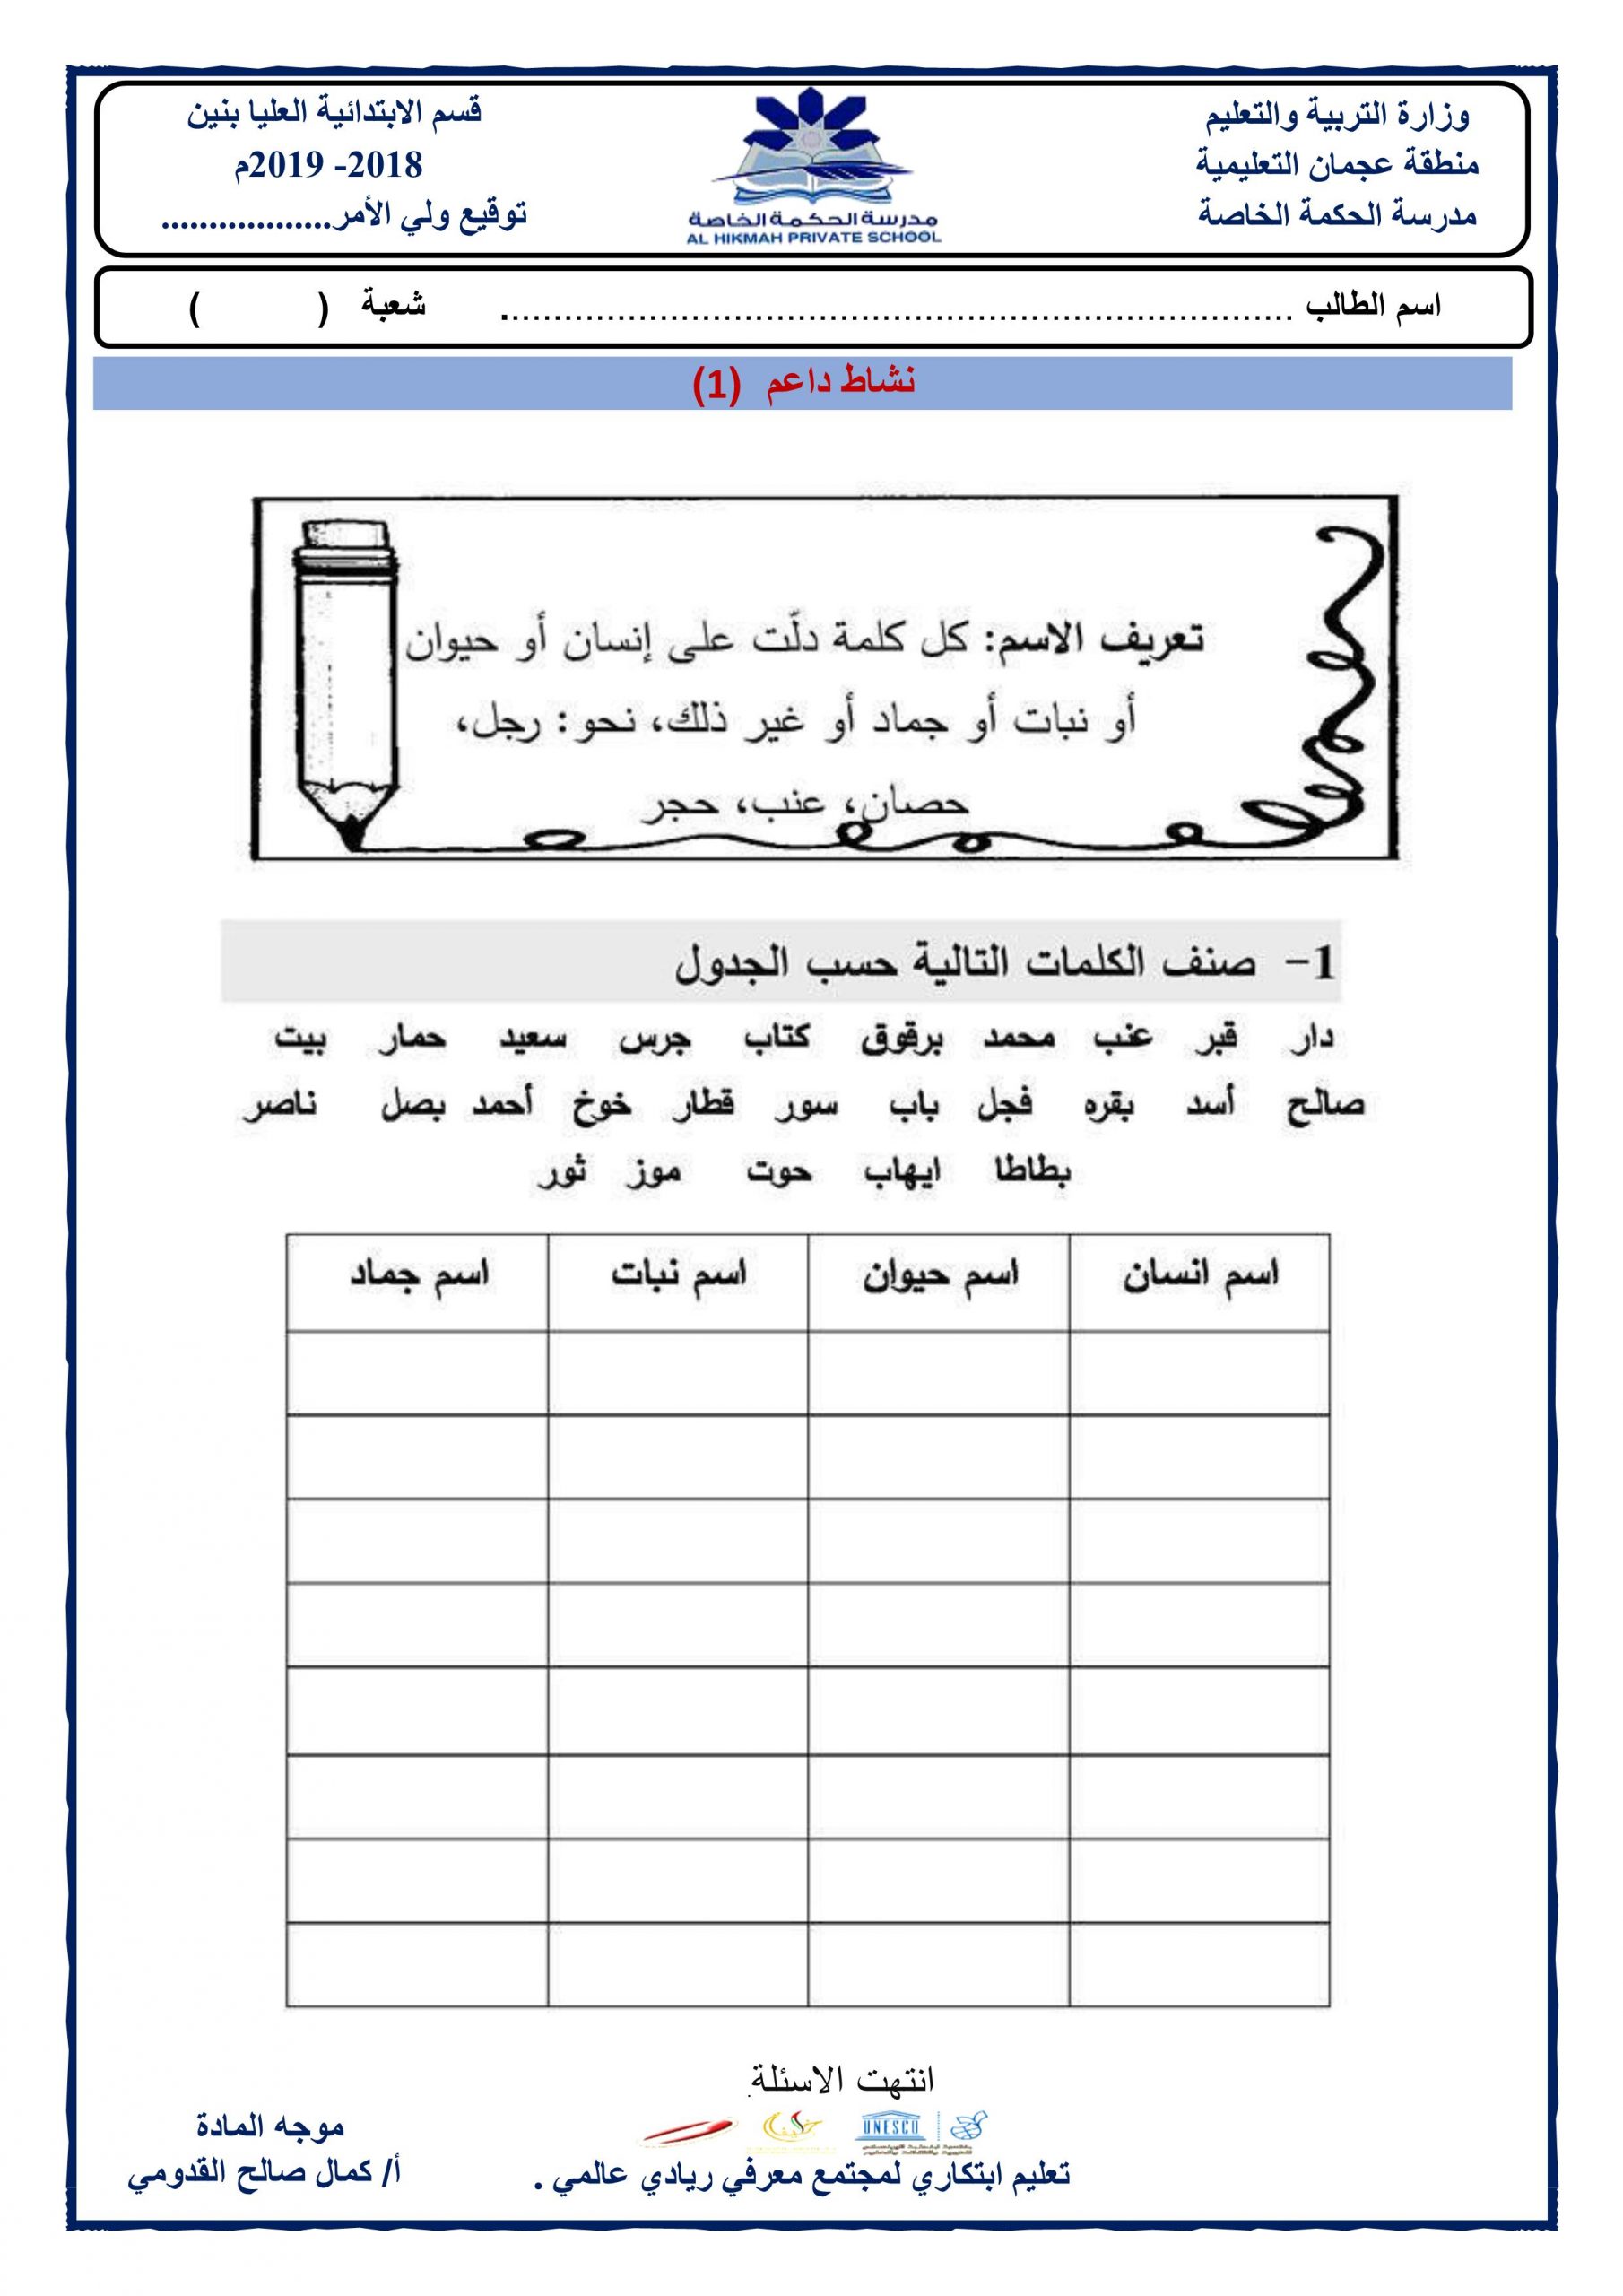 ورقة عمل نشاط داعم اقسام الكلام للصف الرابع مادة اللغة العربية ملفاتي